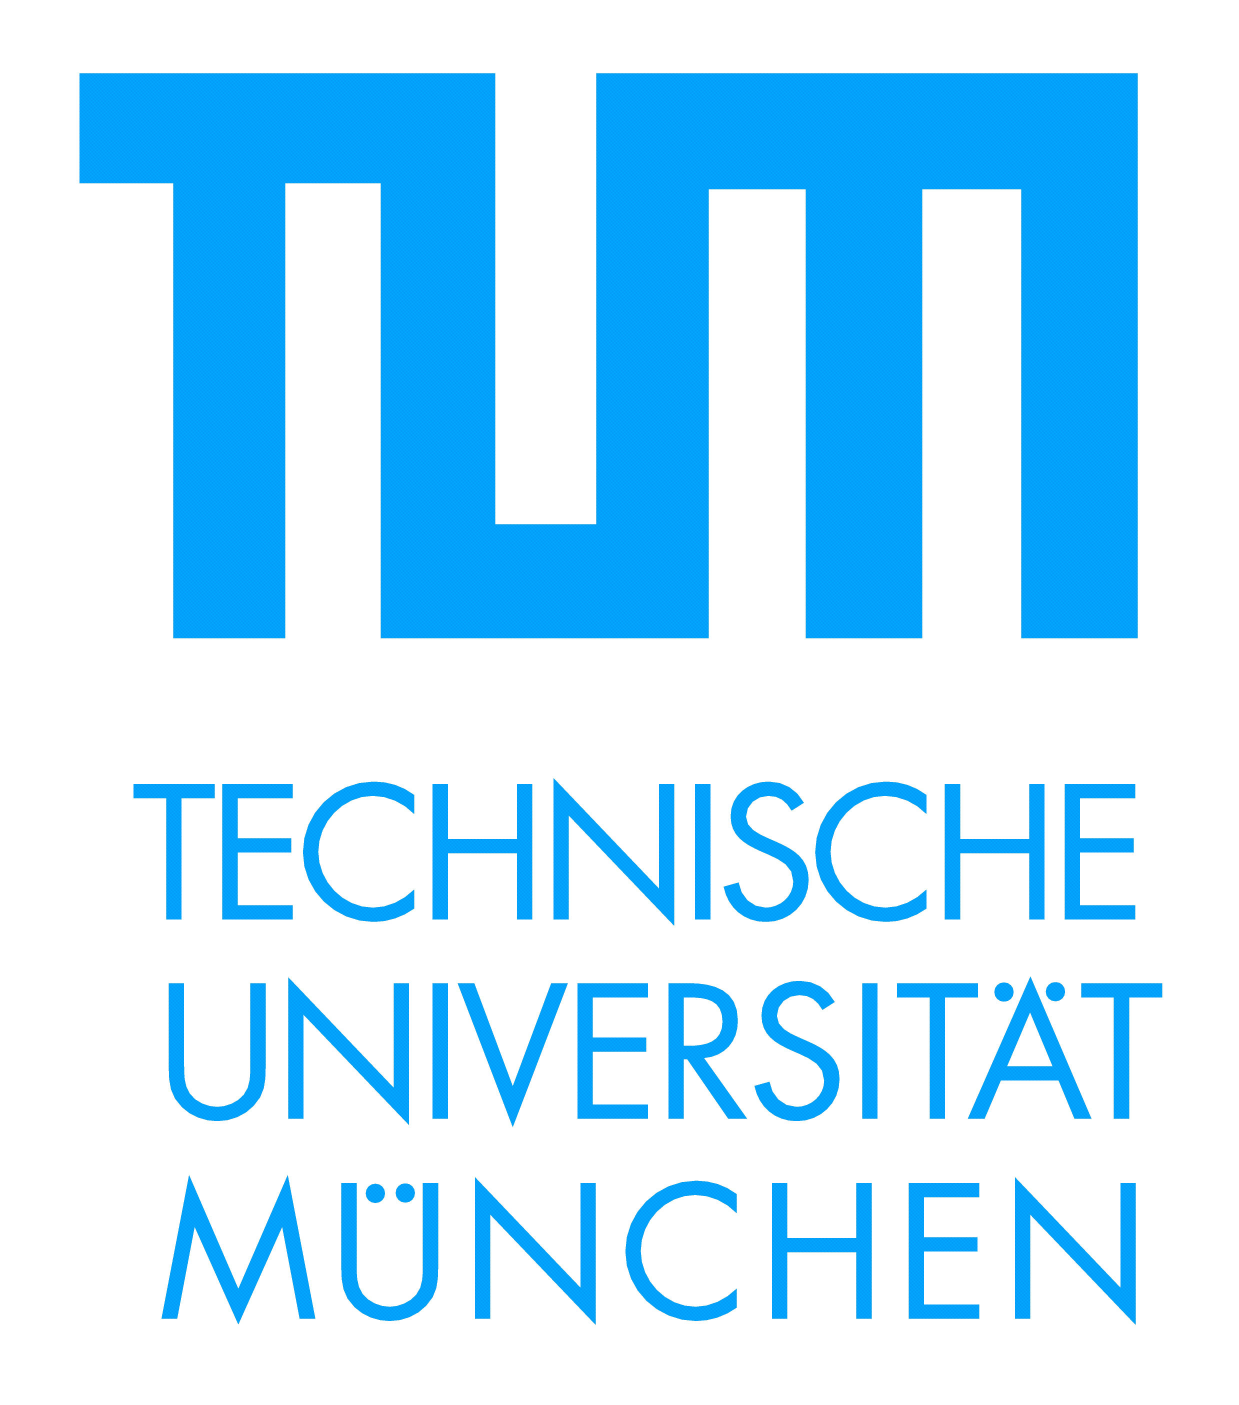 TUM logo